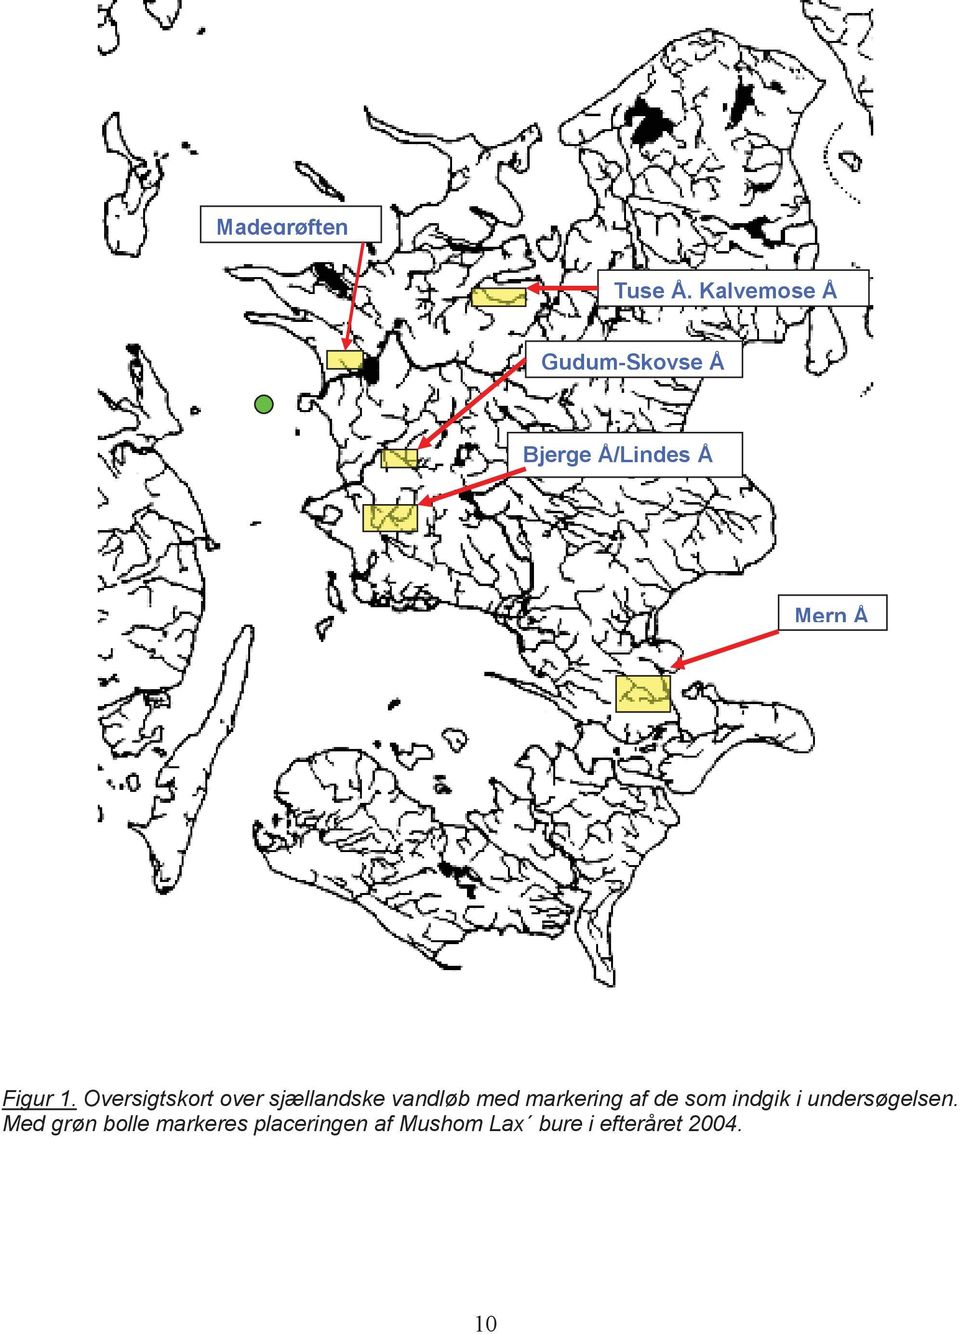 Oversigtskort over sjællandske vandløb med markering af de